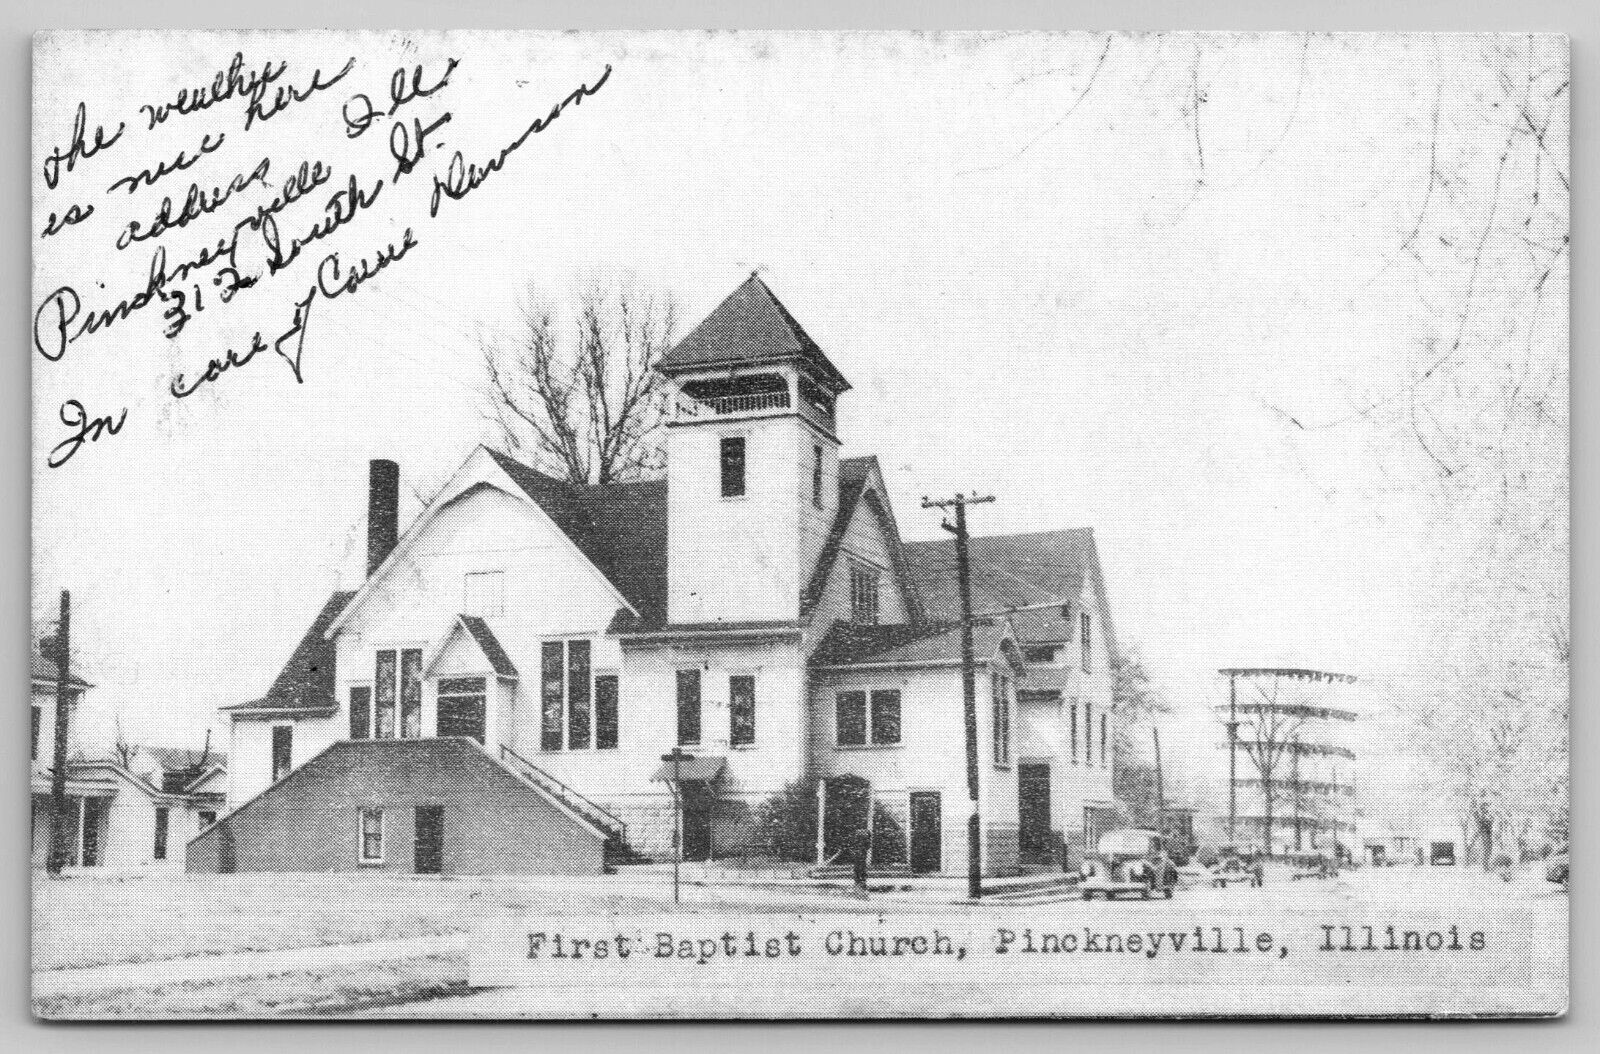 First Baptist Church PINCKNEYVILLE Illinois